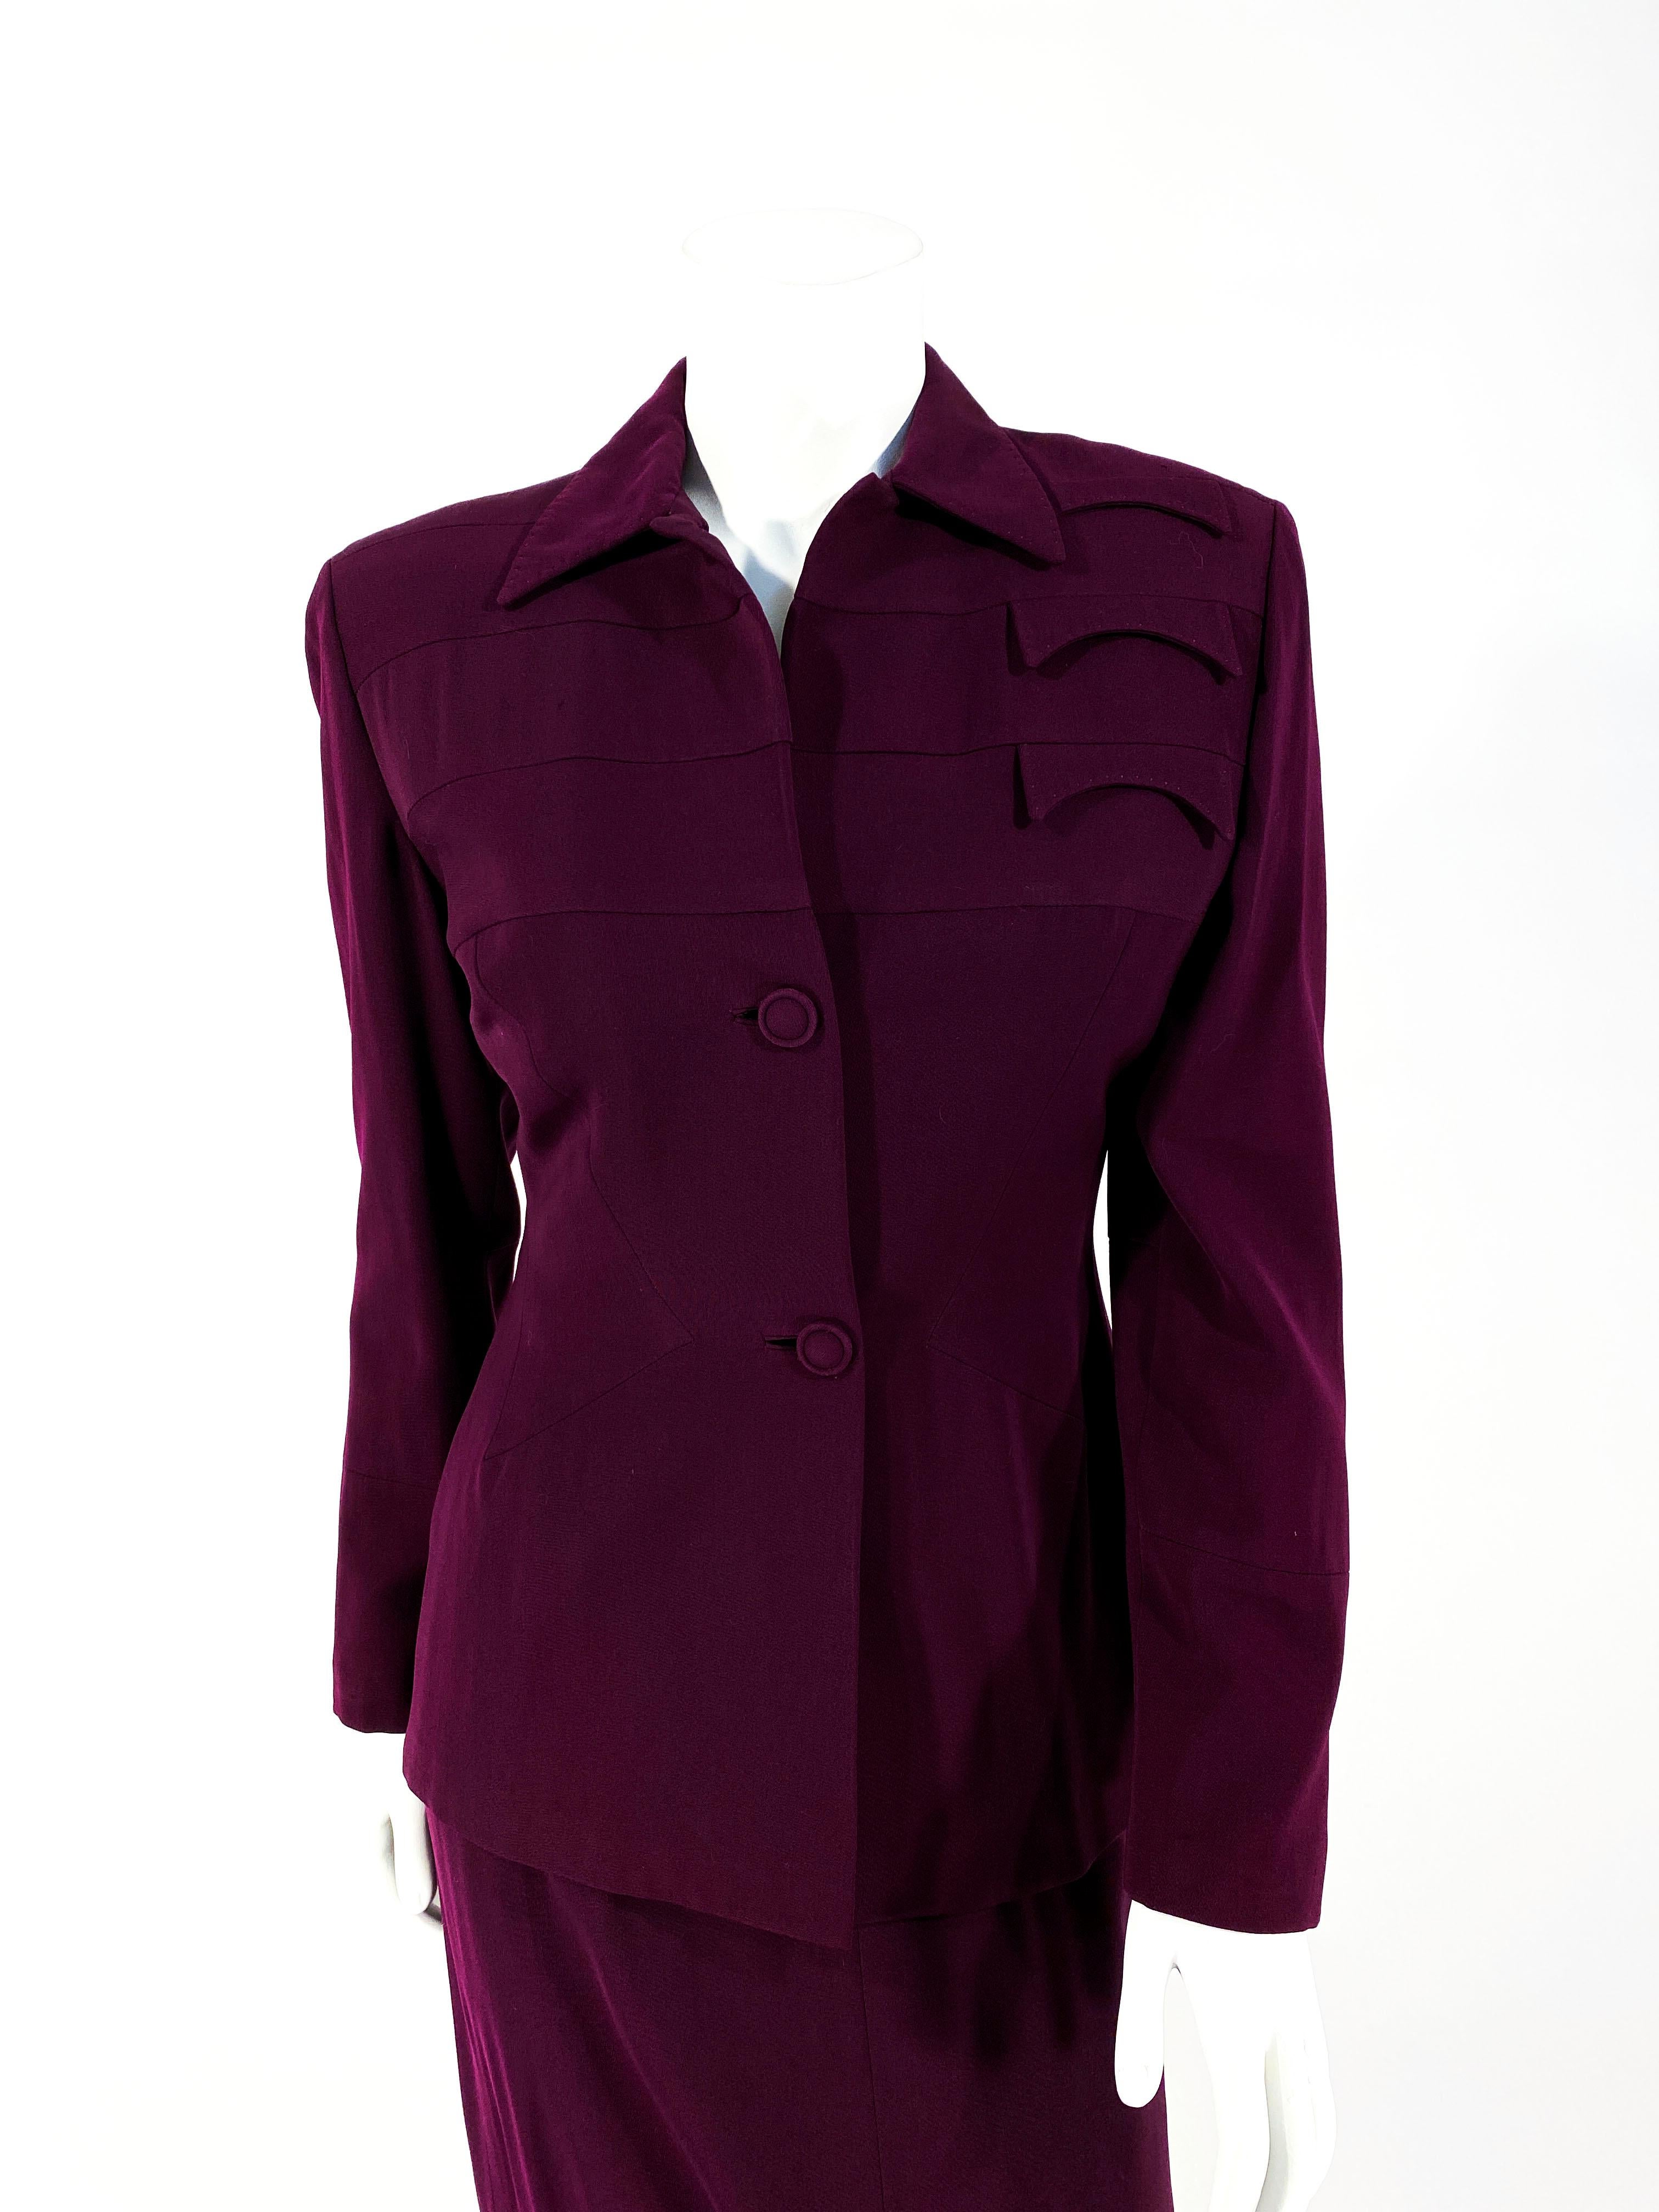 weinfarbener Woll-Kaberdine-Anzug aus den 1940er Jahren mit Bändern aus umgekehrtem Material unterhalb der Schultern. Die Fake-Taschen sind entlang der linken Schulter von Hand aufgenäht. Die Manschetten sind mit passenden Einsätzen verziert, die